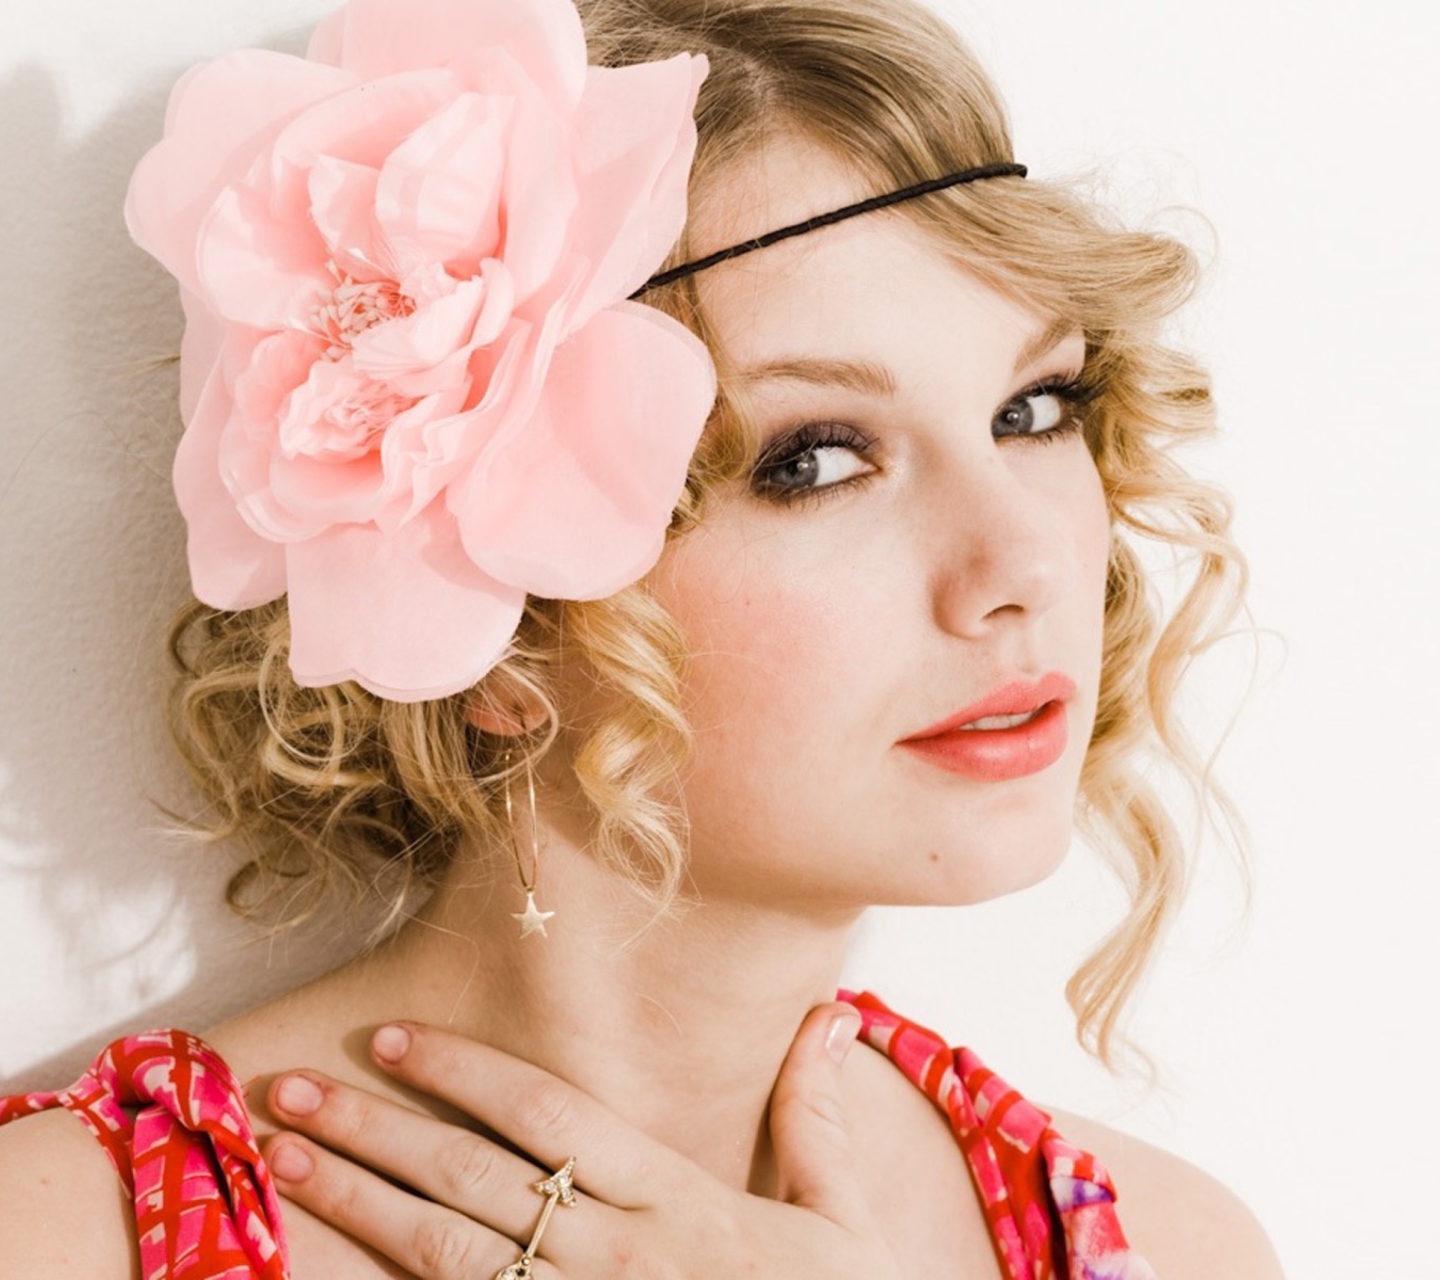 Обои Taylor Swift With Pink Rose On Head 1440x1280